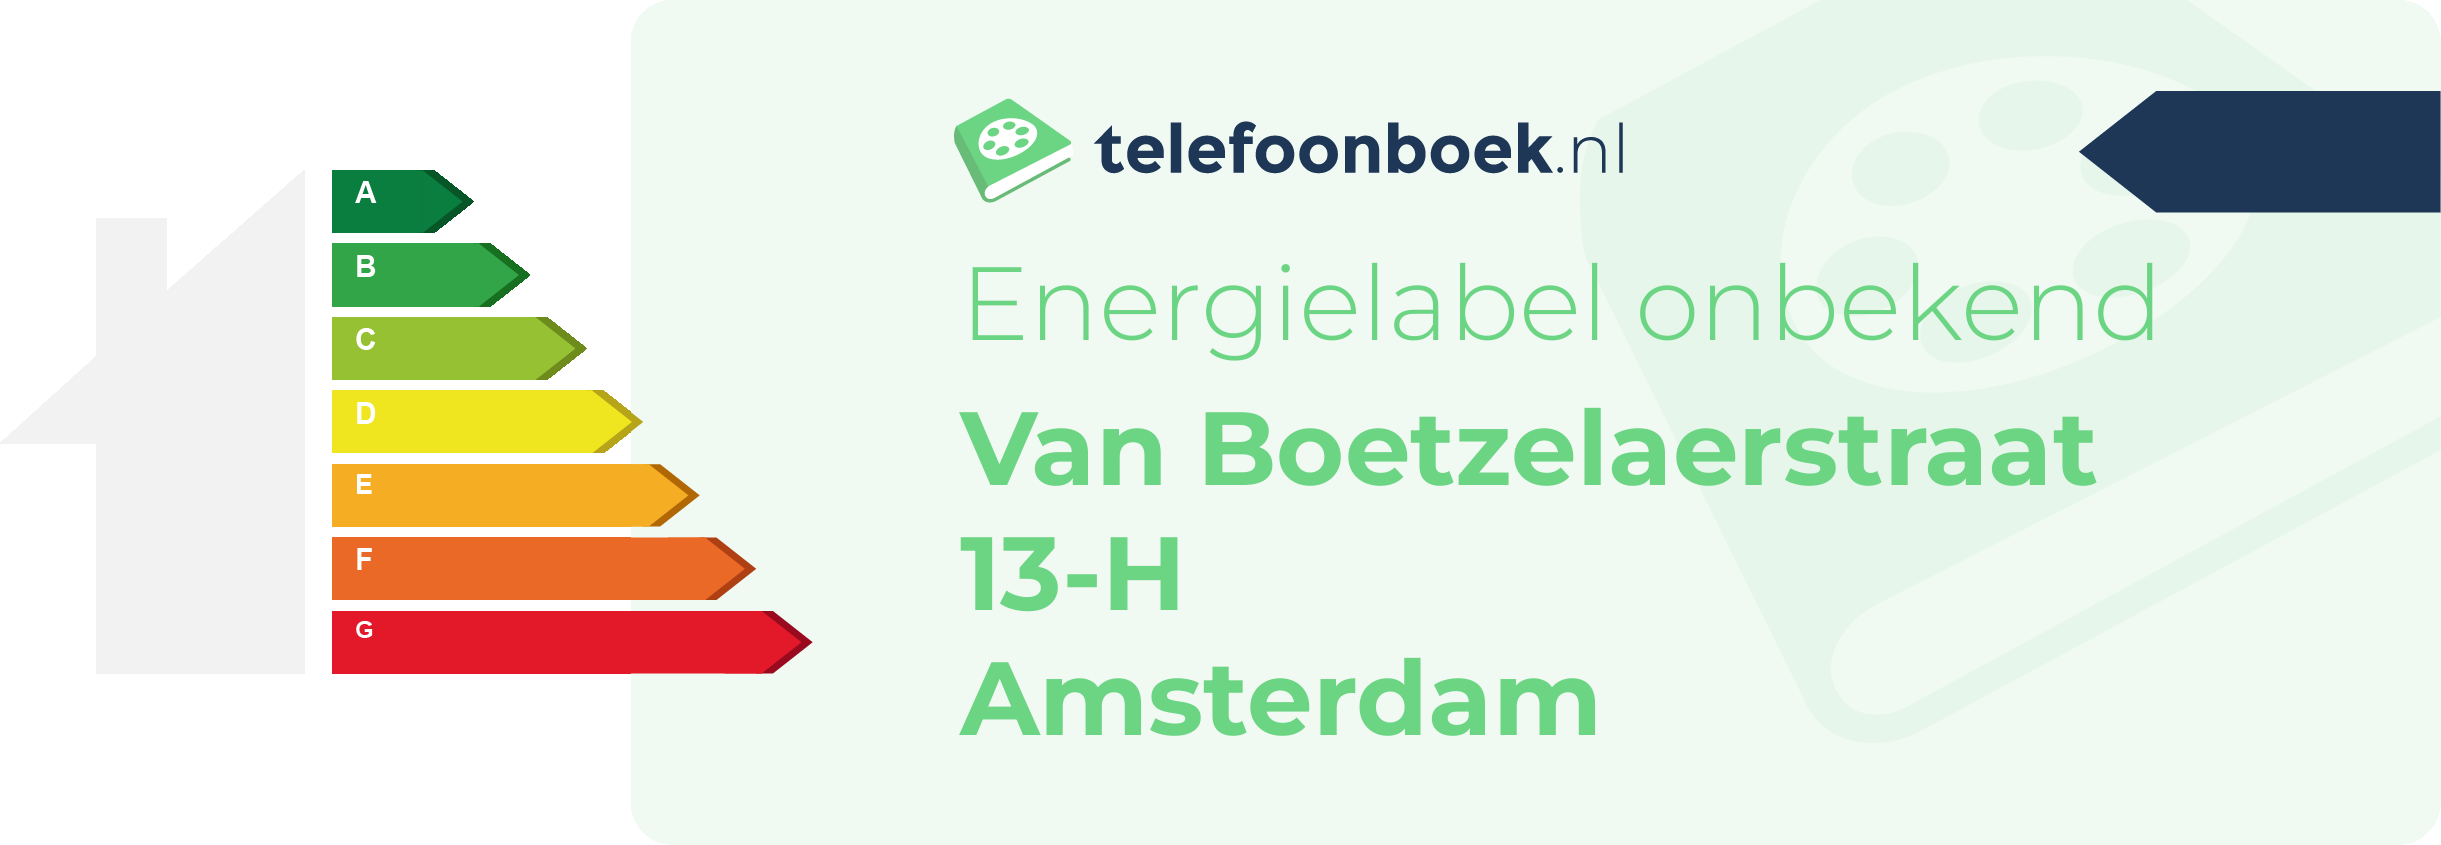 Energielabel Van Boetzelaerstraat 13-H Amsterdam